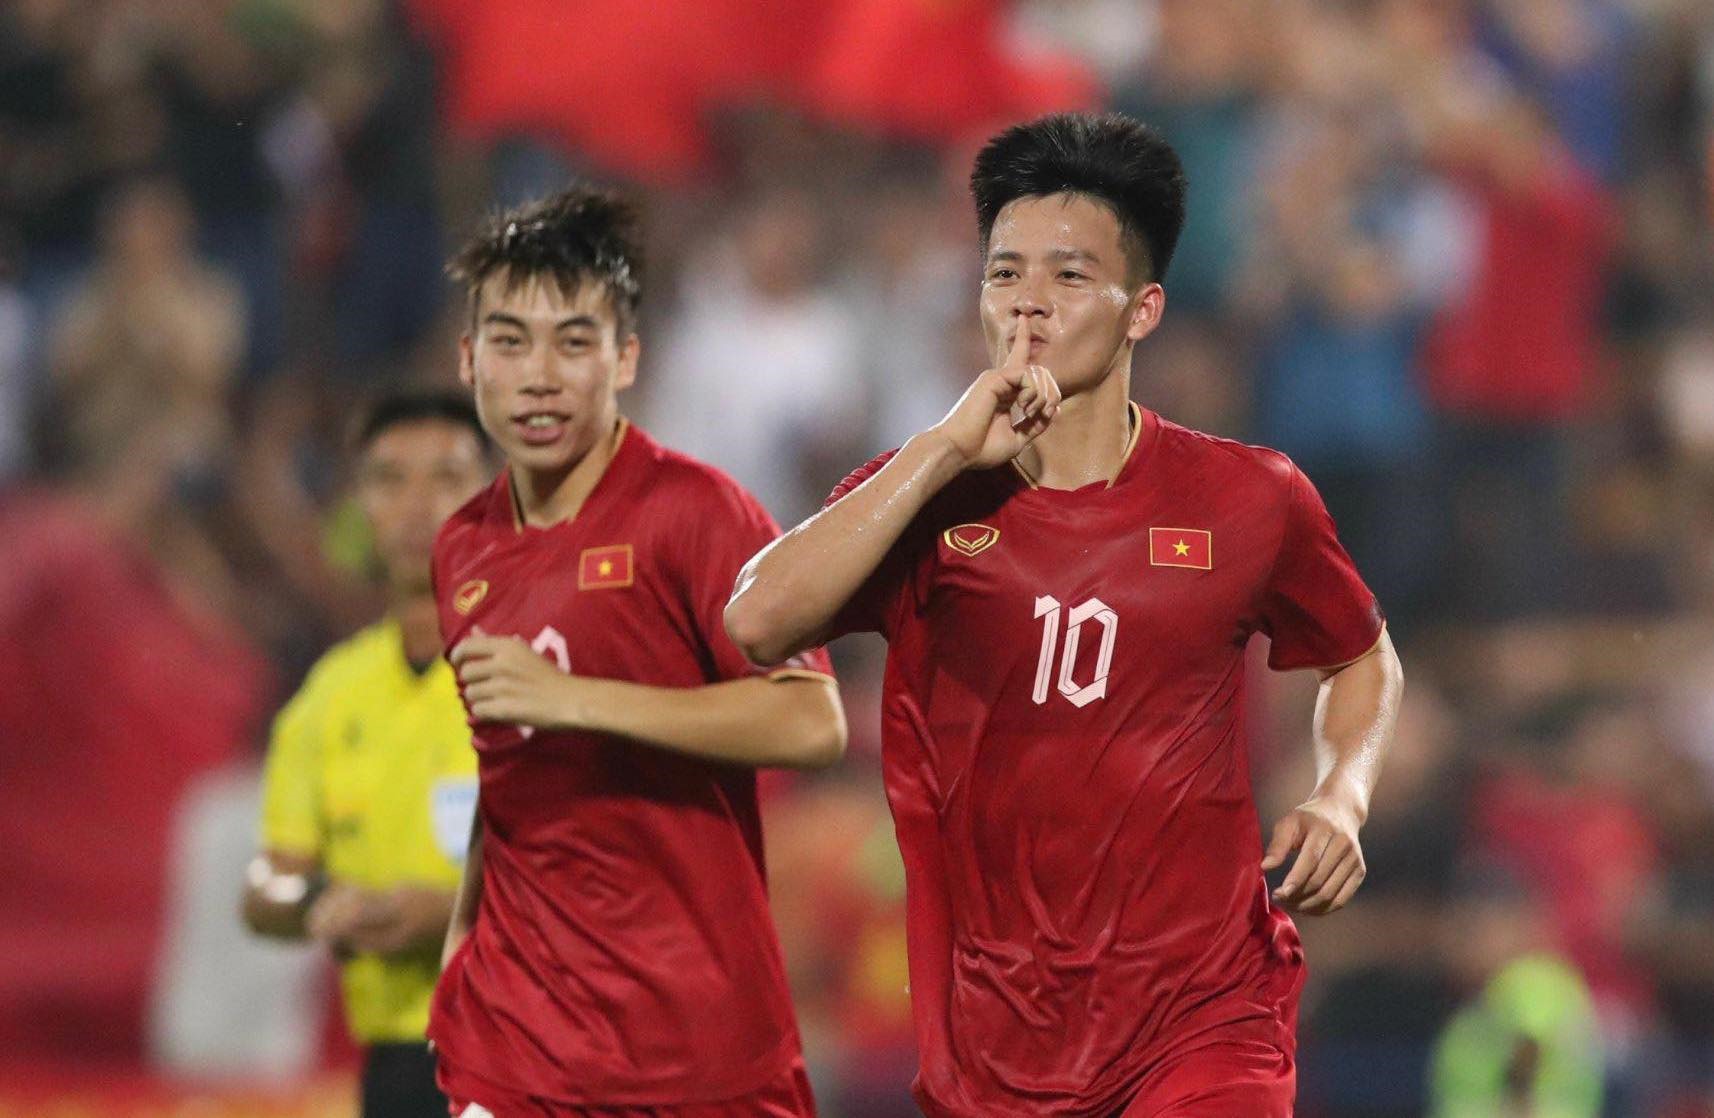 Nguyễn Thanh Nhàn (số 10) toả sáng ở trận thắng đậm 6-0 của U23 Việt Nam trước U23 Guam. Ảnh: Lâm Thoả